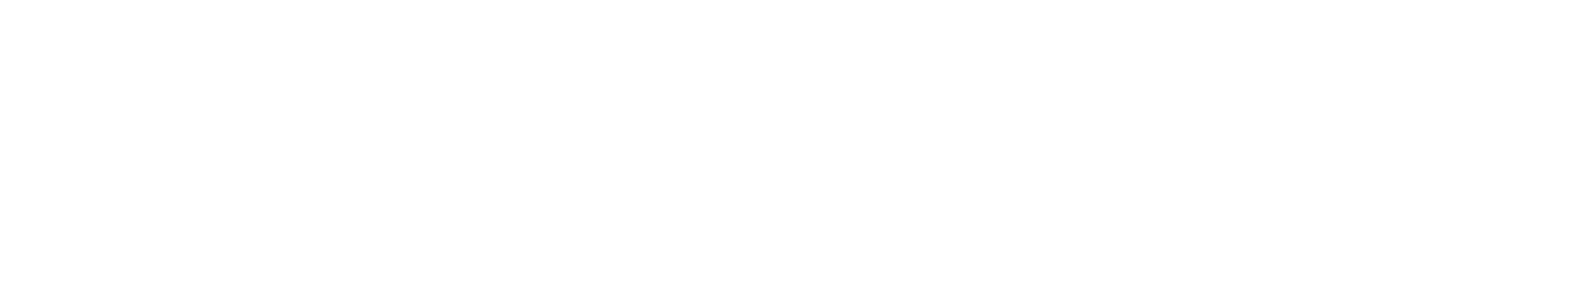 Komatsu logo large for dark backgrounds (transparent PNG)